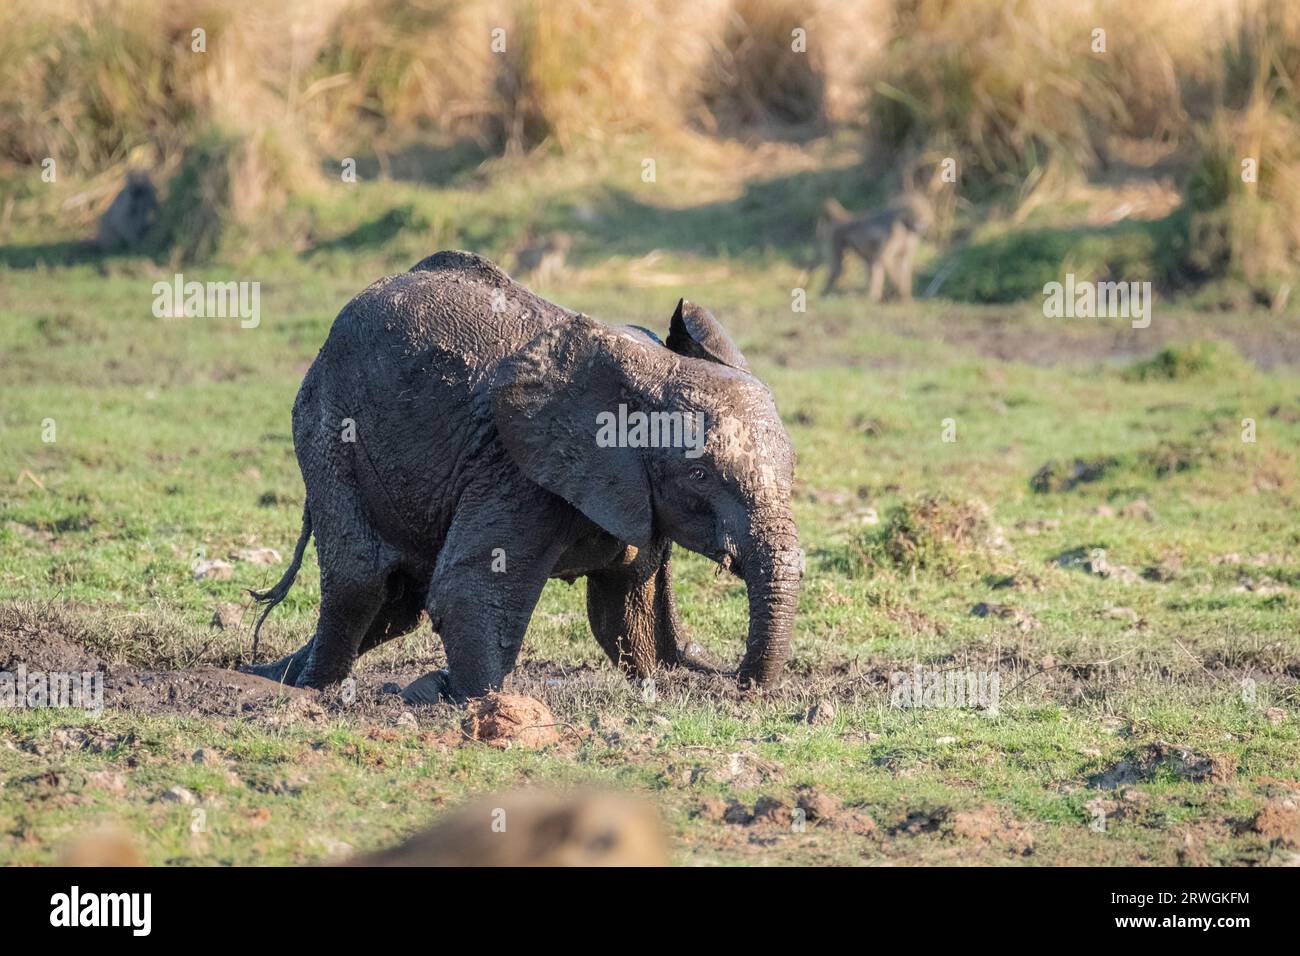 Elefantenbaby (Loxodonta africana) spielt im Schlamm. Das junge Tier ist nass und voller Schlamm. Lower Zambezi National Park, Sambia Stockfoto